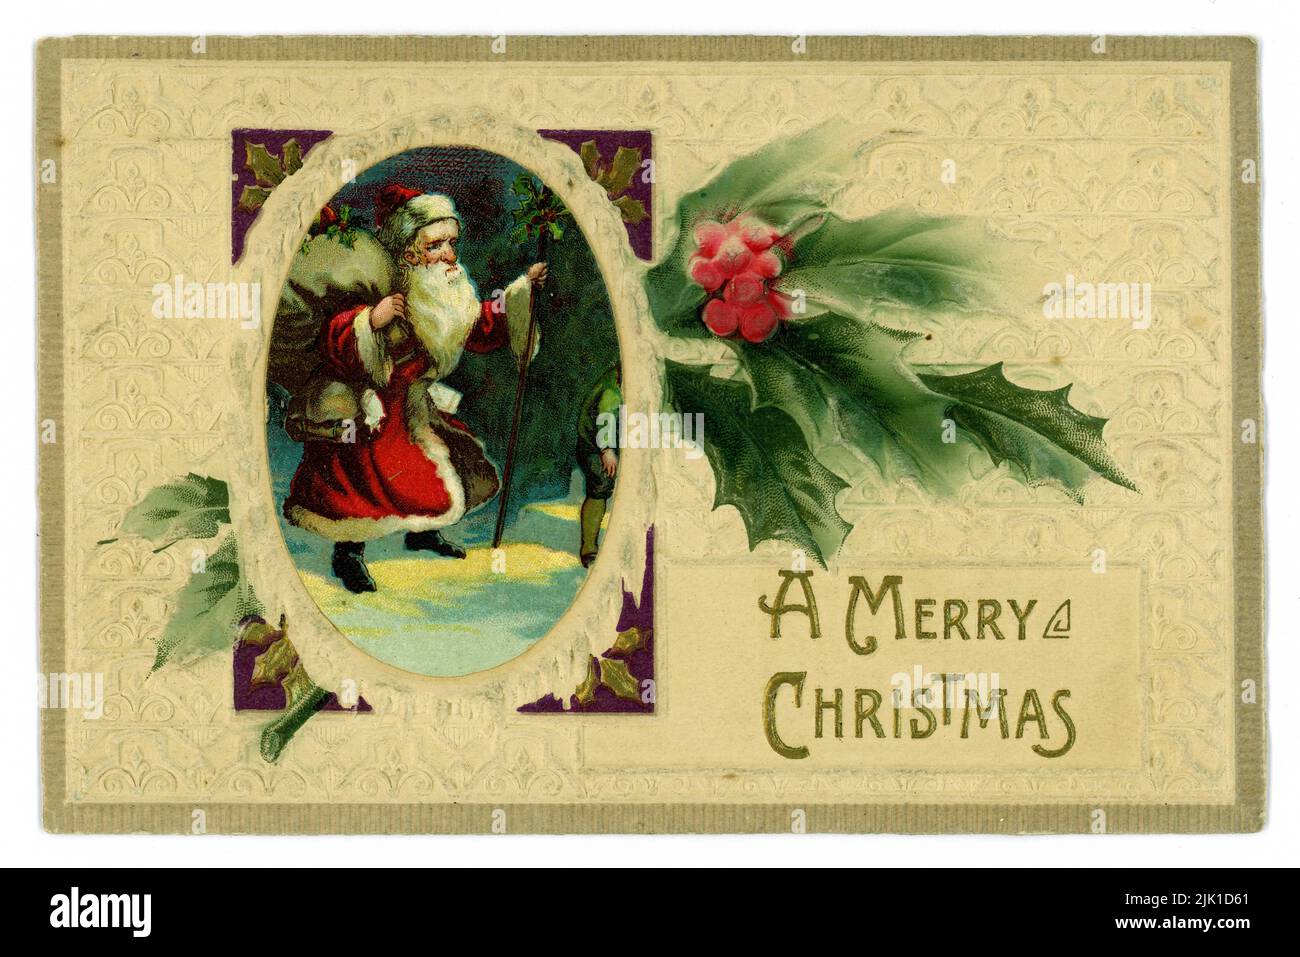 Carte de Noël originale en relief édouardienne, illustrée par le Père Noël marchant dans la neige portant un sac de jouets, une branche de houx, souhaitant « Un joyeux Noël » Royaume-Uni vers 1905, 1910 Banque D'Images